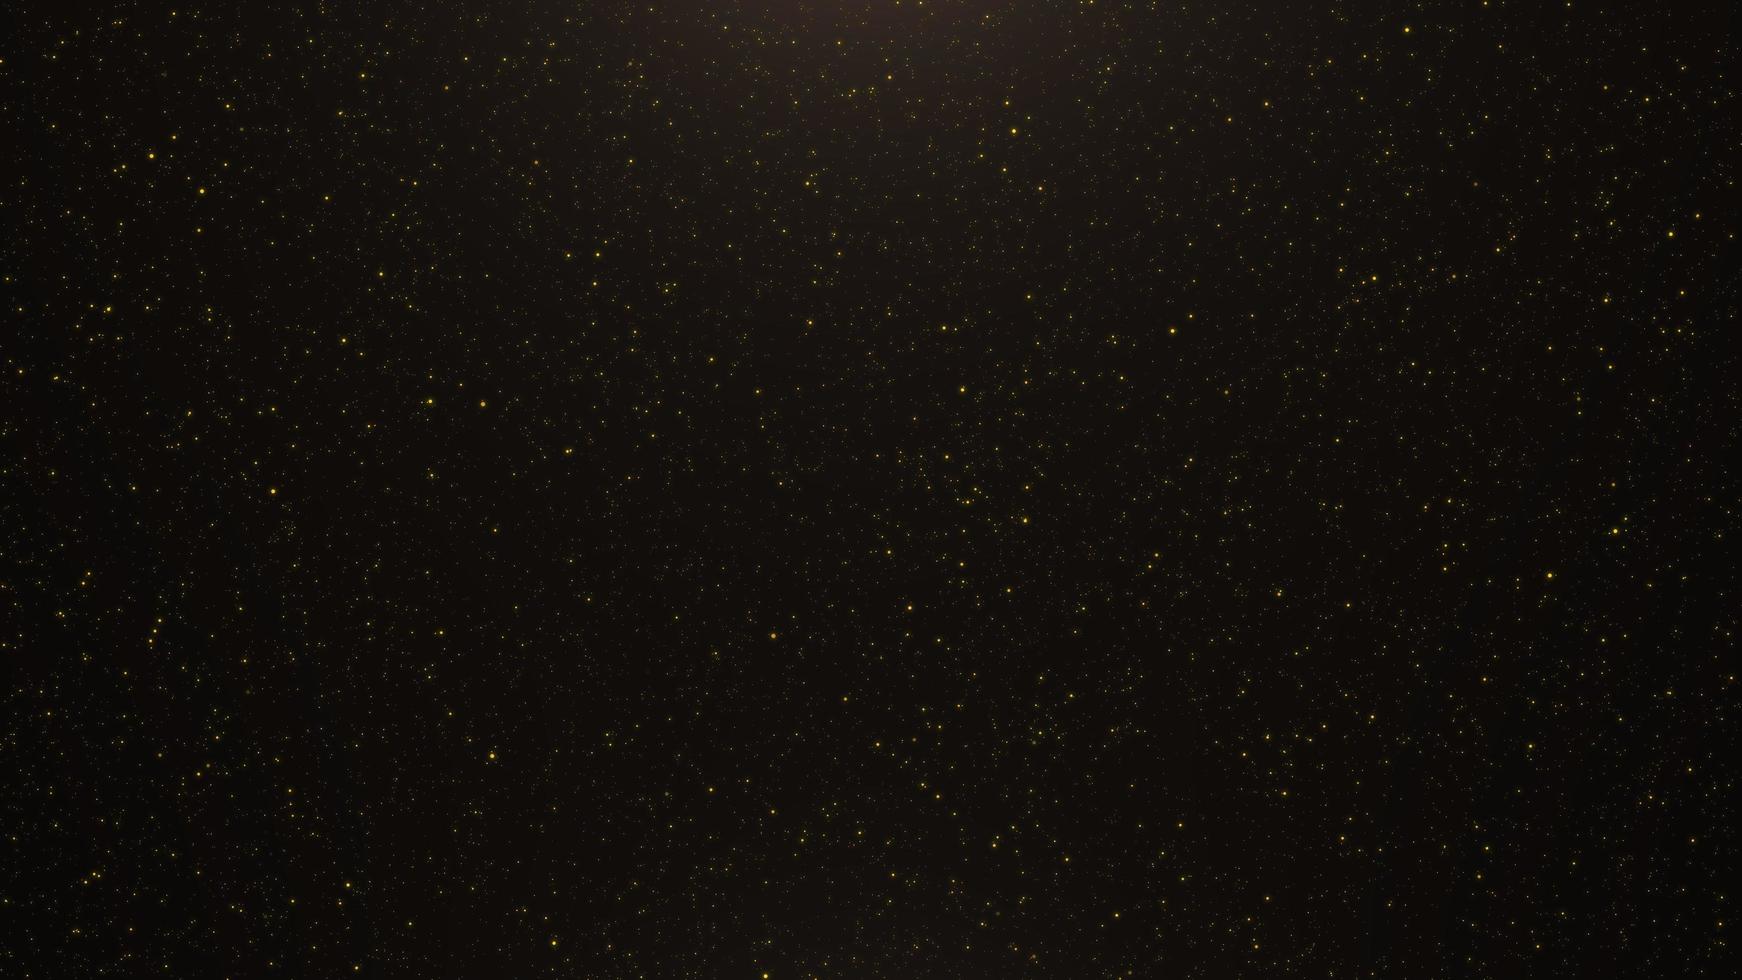 sfondo astratto di particelle d'oro tremolanti e bagliori di luce foto